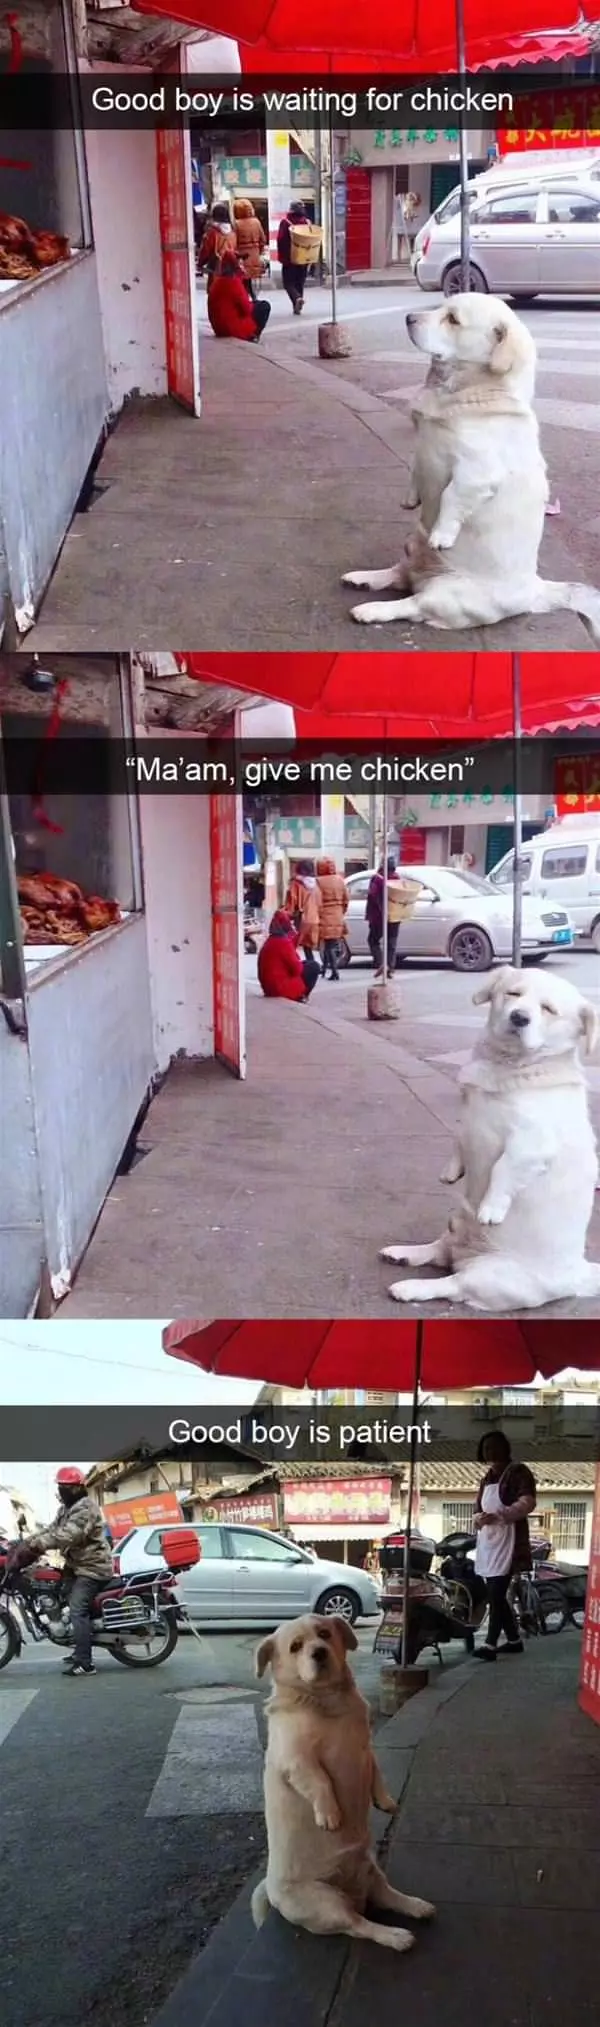 A Chicken Please